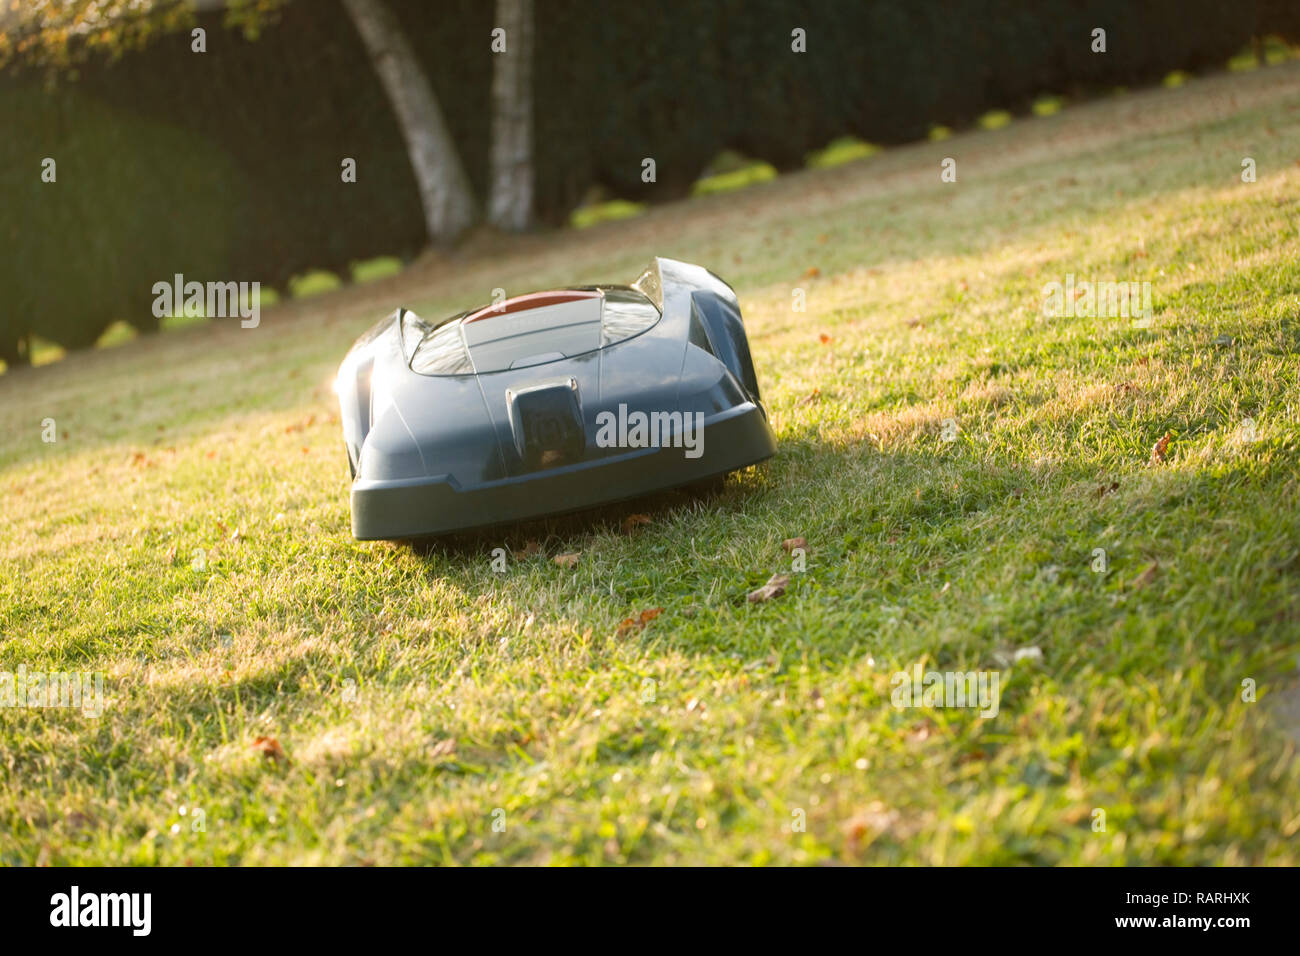 Tondeuse robot automatique coupé de l'herbe en direction de la caméra, l'angle shot Banque D'Images